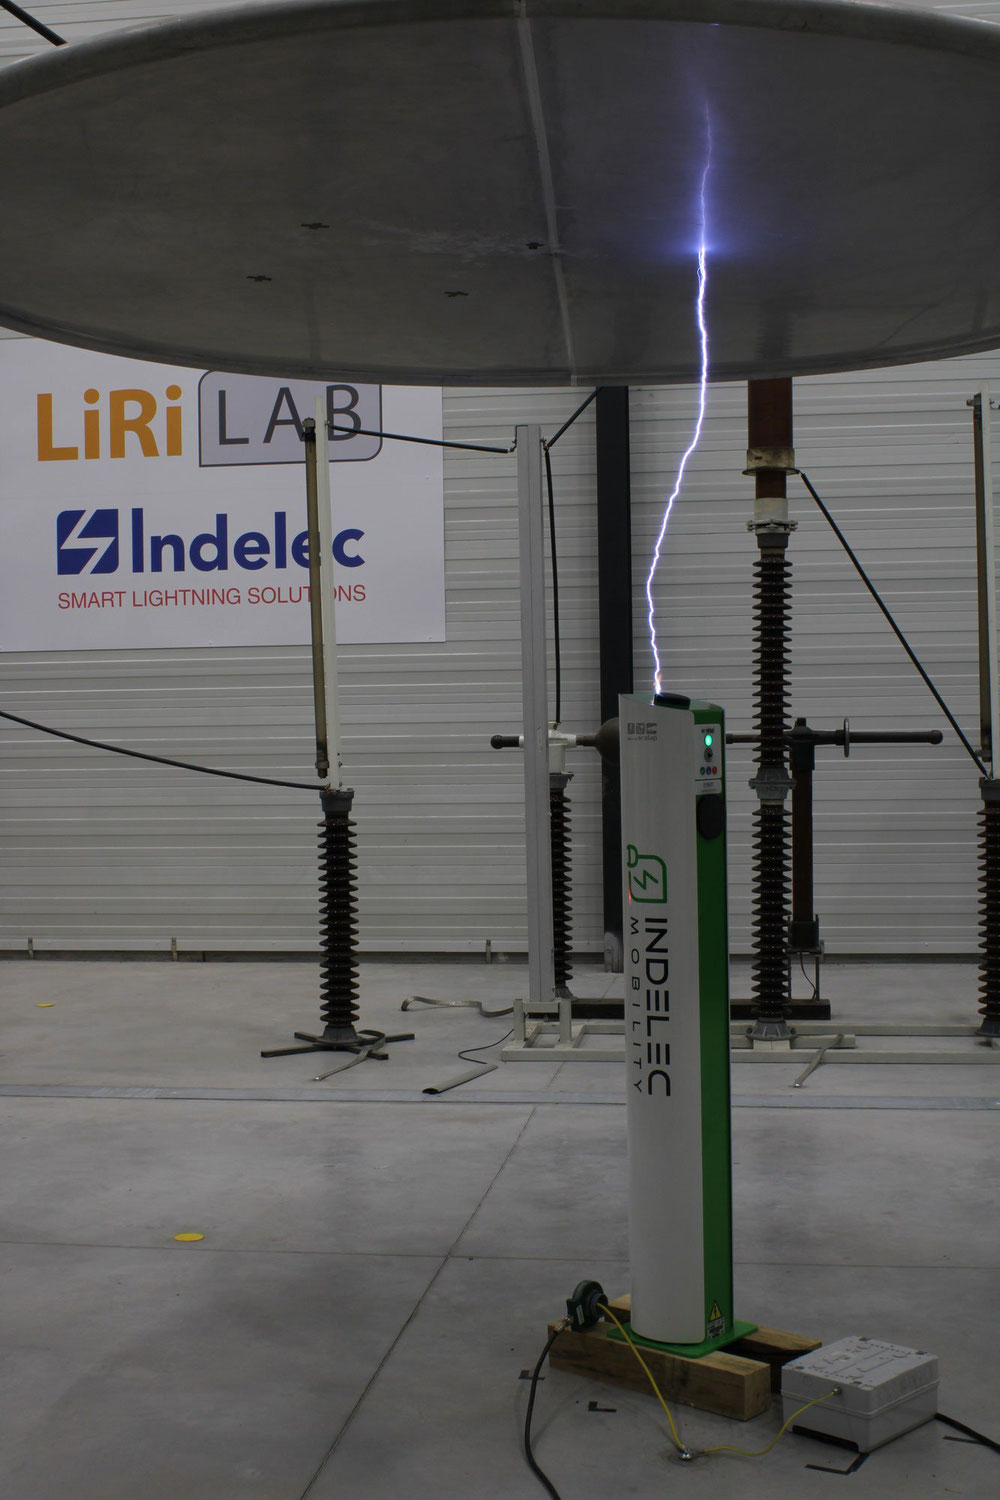 Indelec Mobility propose les seules bornes de recharge pour vehicules électriques à avoir passé avec succès des tests de foudroiement en laboratoire